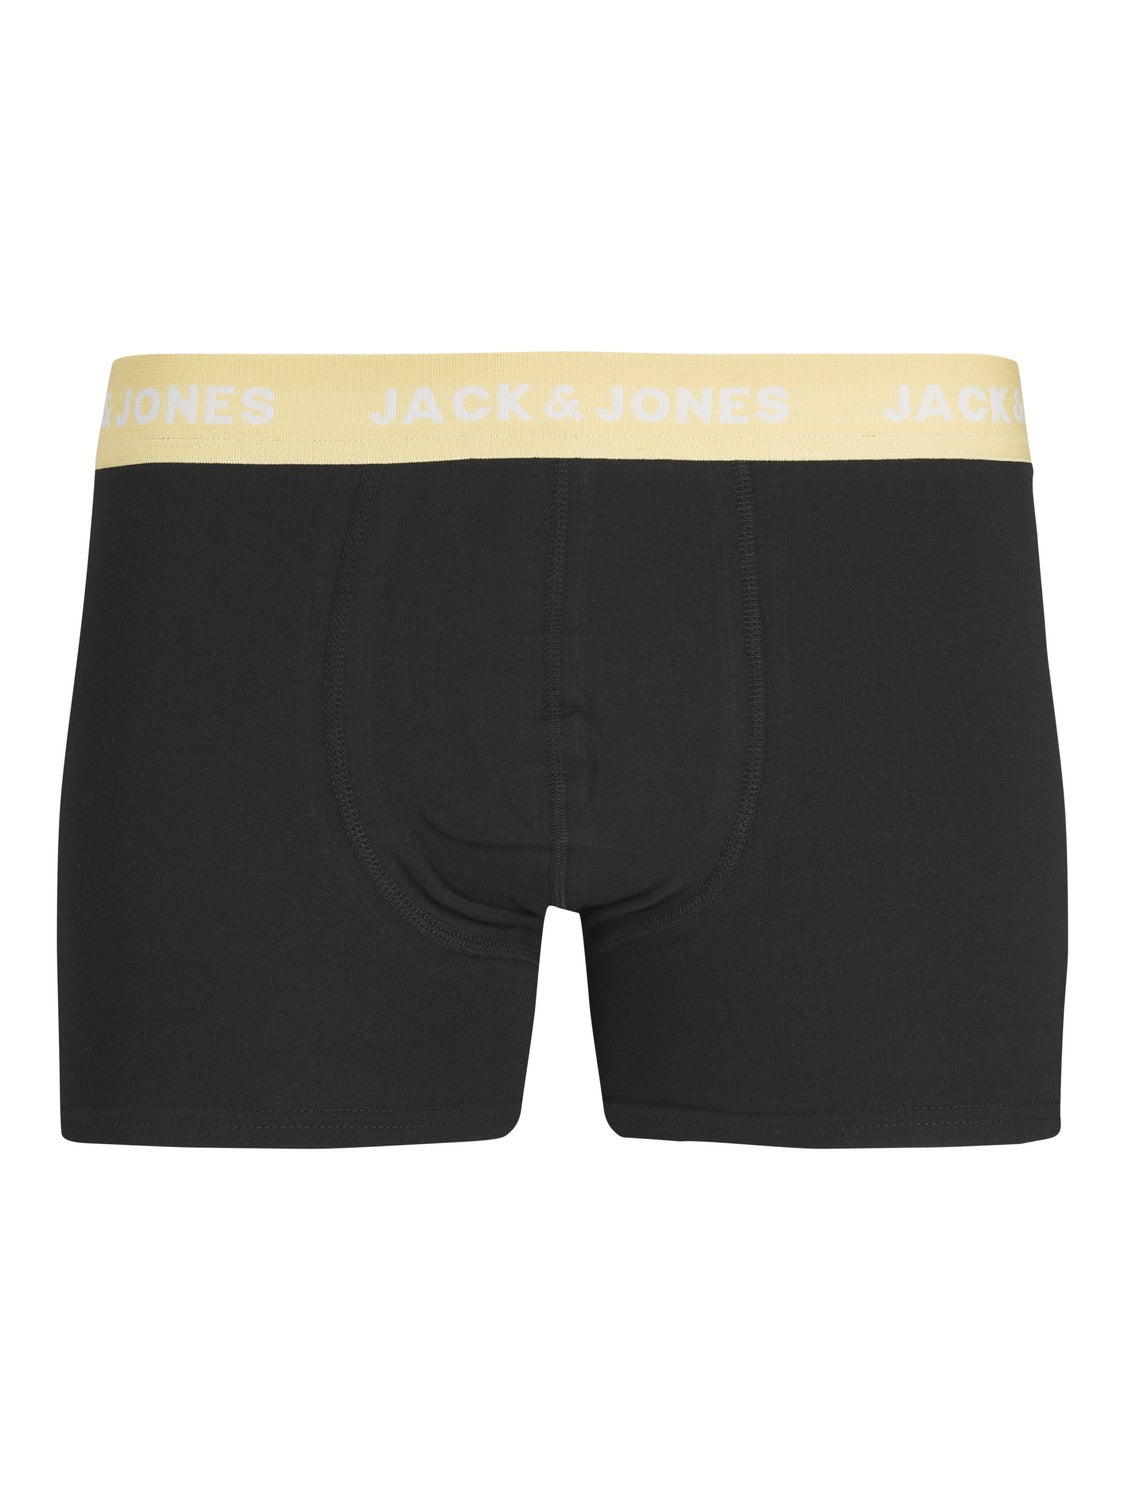 Jack & Jones Jaccolorful Kent Trunks 7 Pack – underpants – shop at